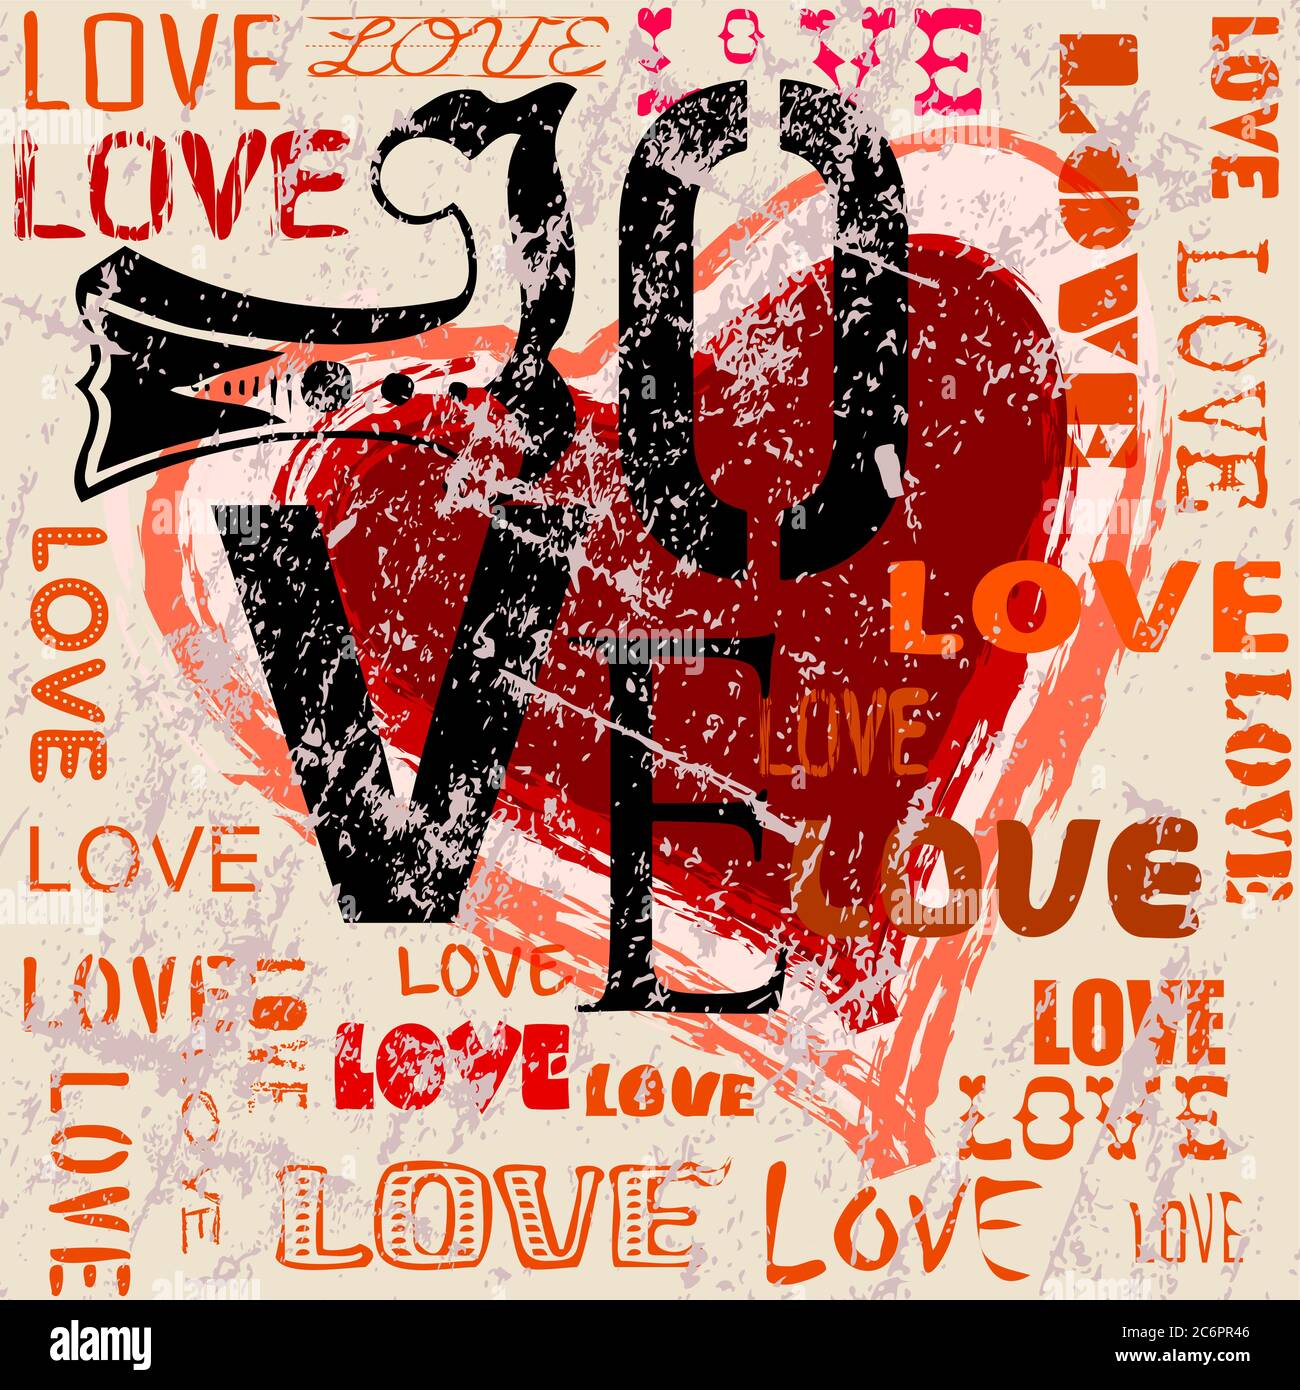 Liebe Emotion, vintage und grungy Illustration, kann diese Vektorgrafik als Grußkarte für Hochzeit, Verlobung, Valentinstag verwendet werden. Stock Vektor